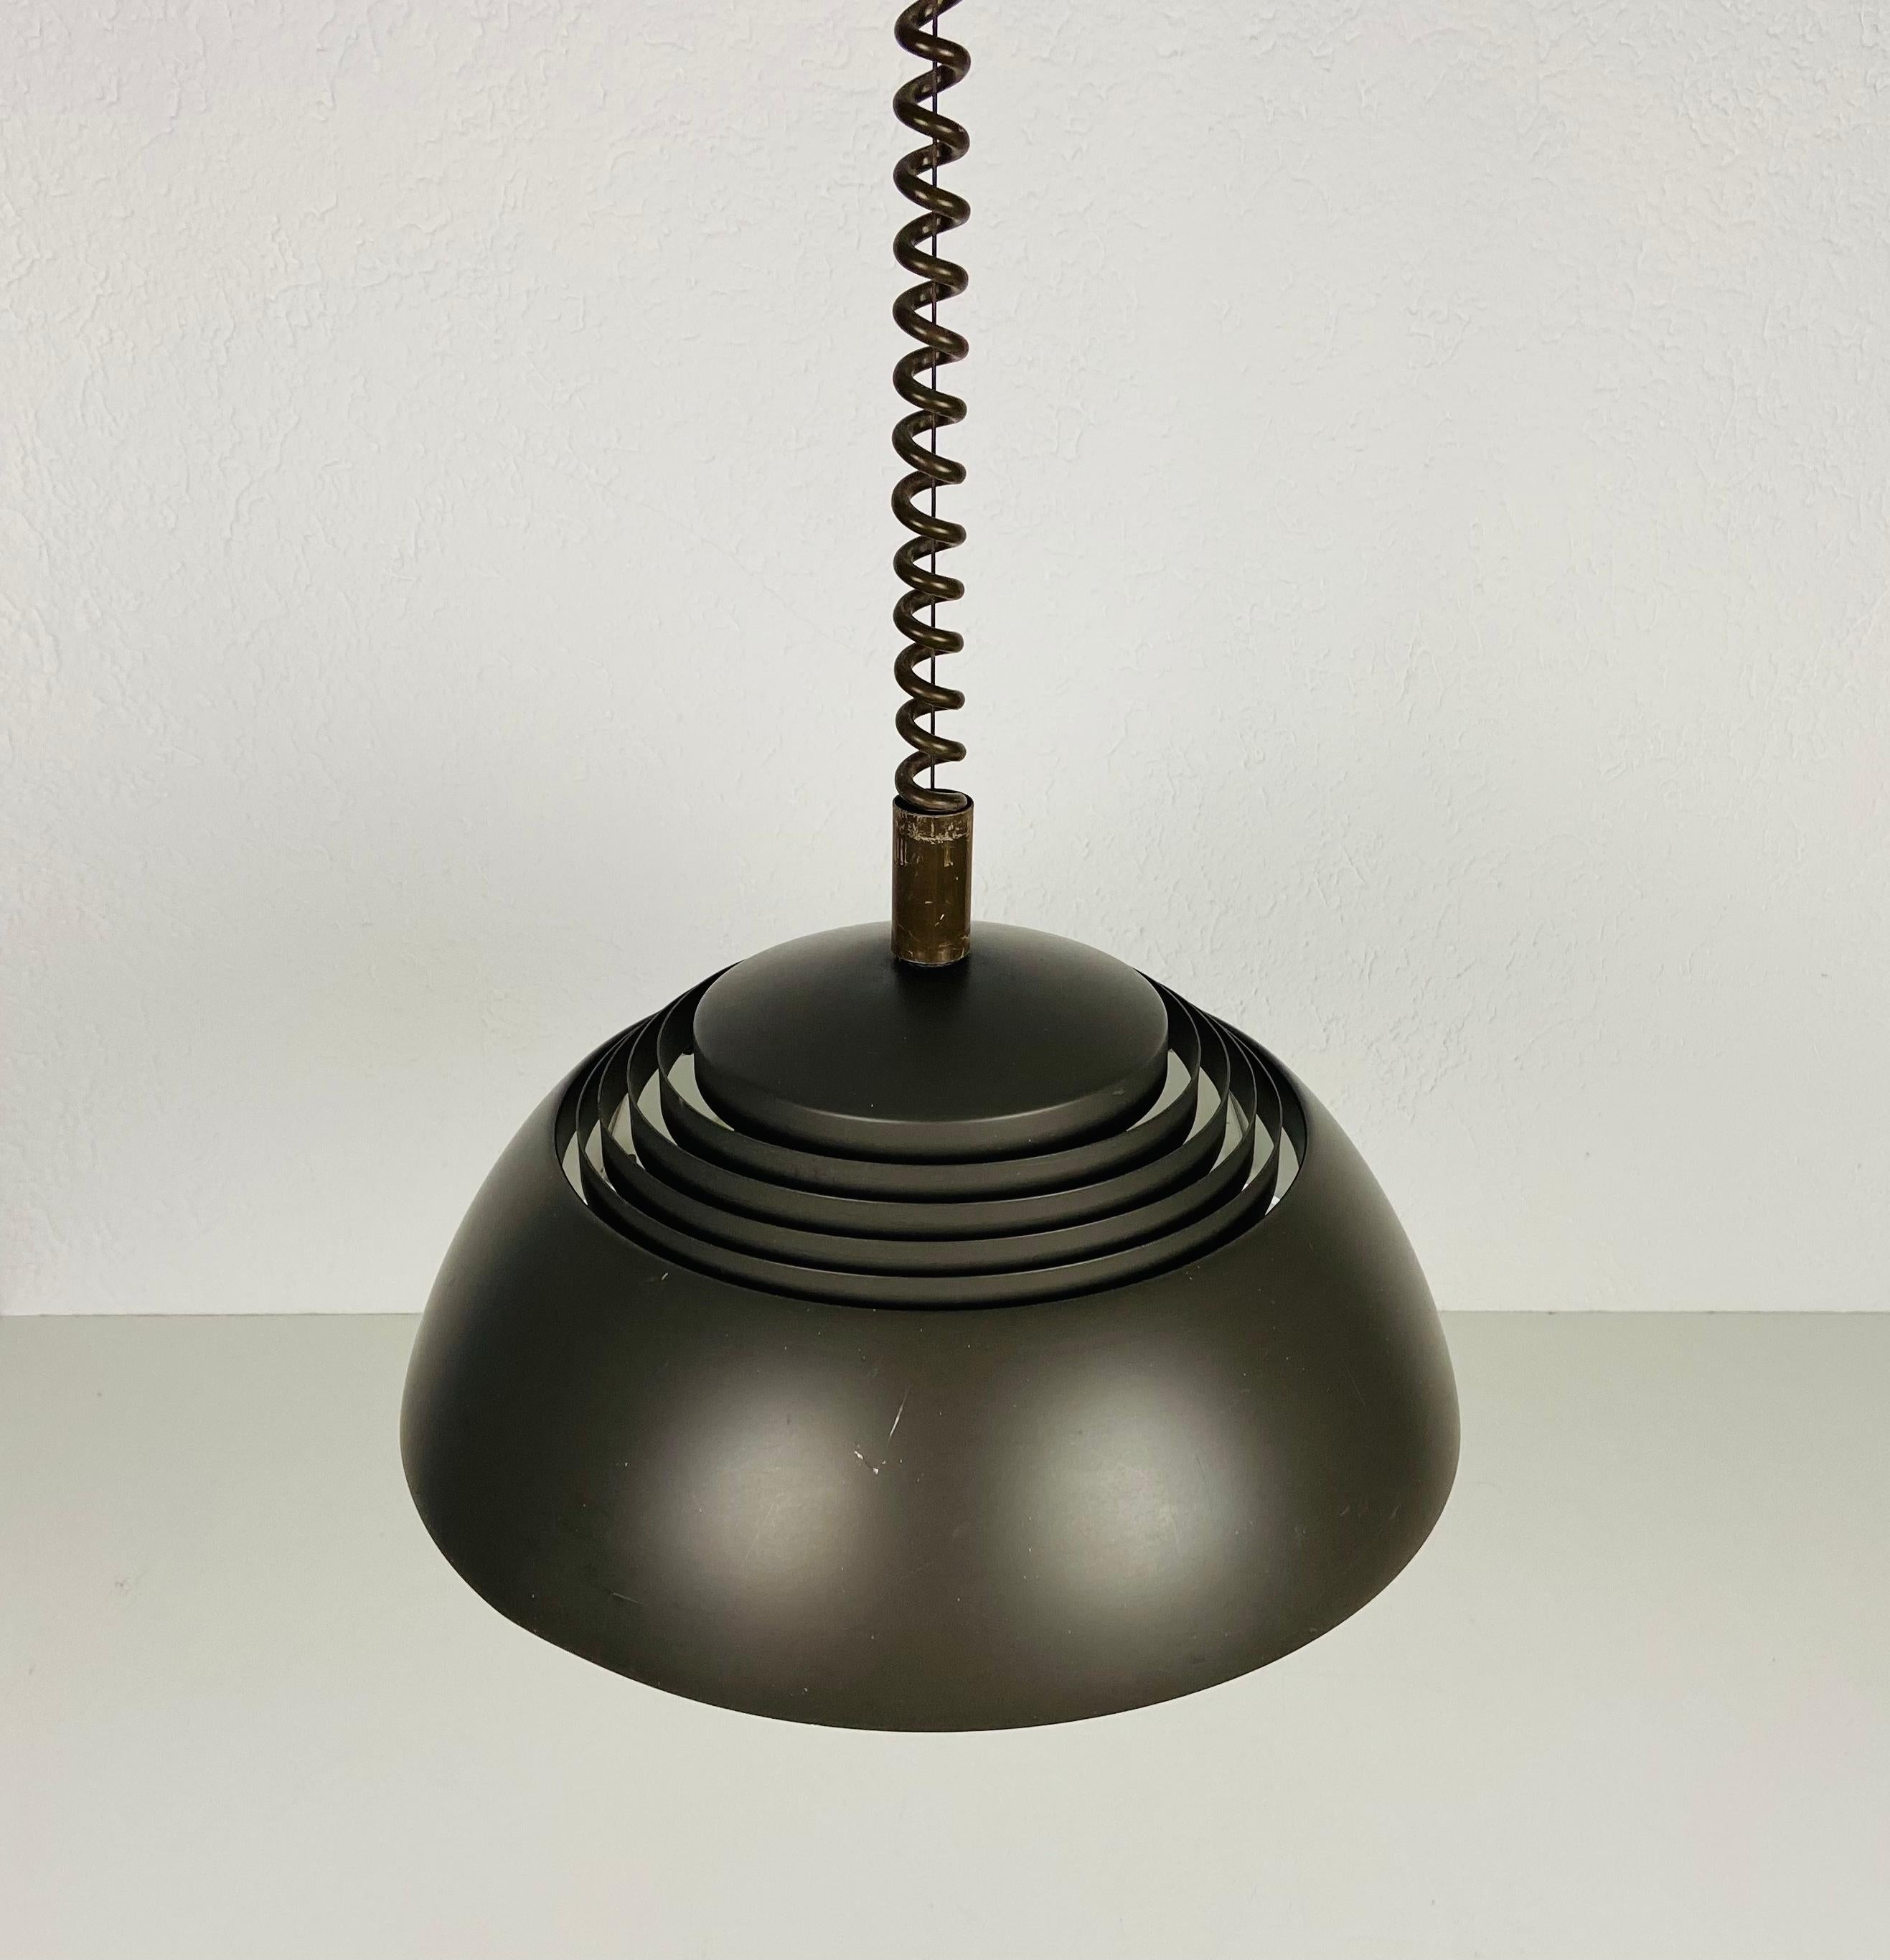 Rare lampe suspendue d'Arne Jacobsen fabriquée au Danemark dans les années 1960. Le luminaire donne une très belle lumière. Il est fait d'aluminium et de plastique fin. La hauteur est réglable.

Le luminaire nécessite trois ampoules E27 (US E26).